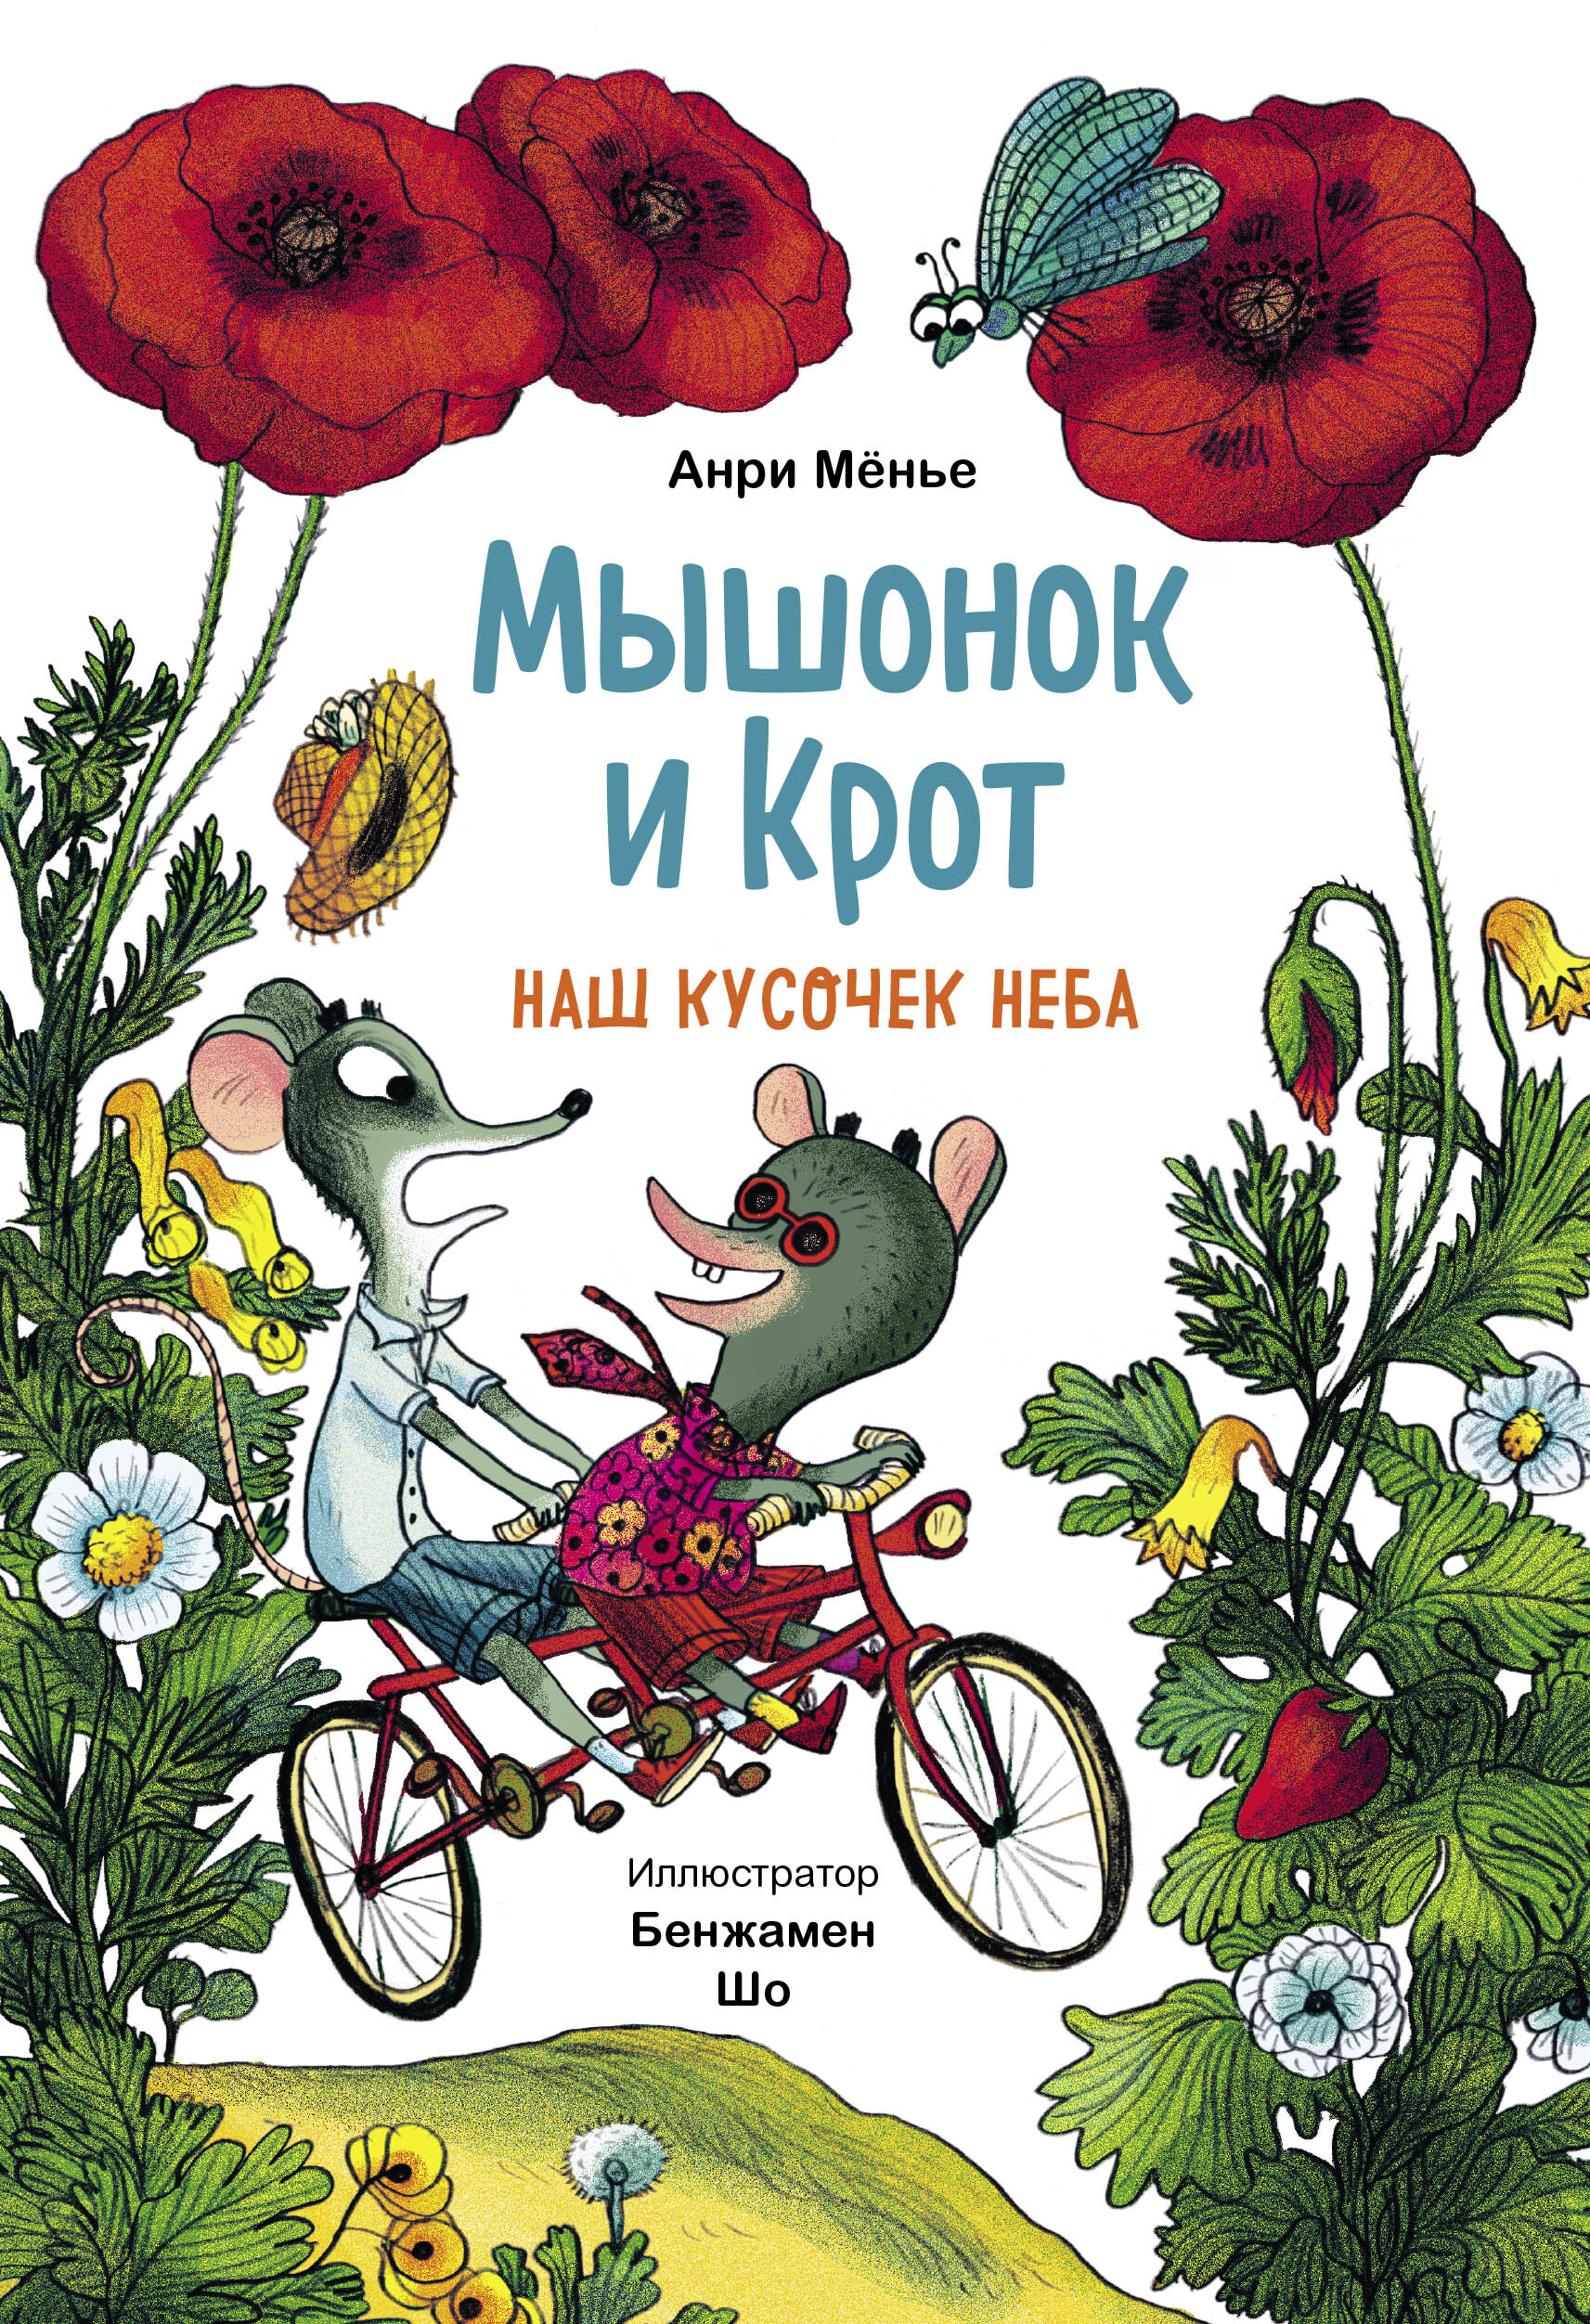 Мыши книга отзывы. Книга про мышонка. Мышонок и Крот счастливые деньки Анри Менье. Крот и мышонок. Сказки для детей текст.